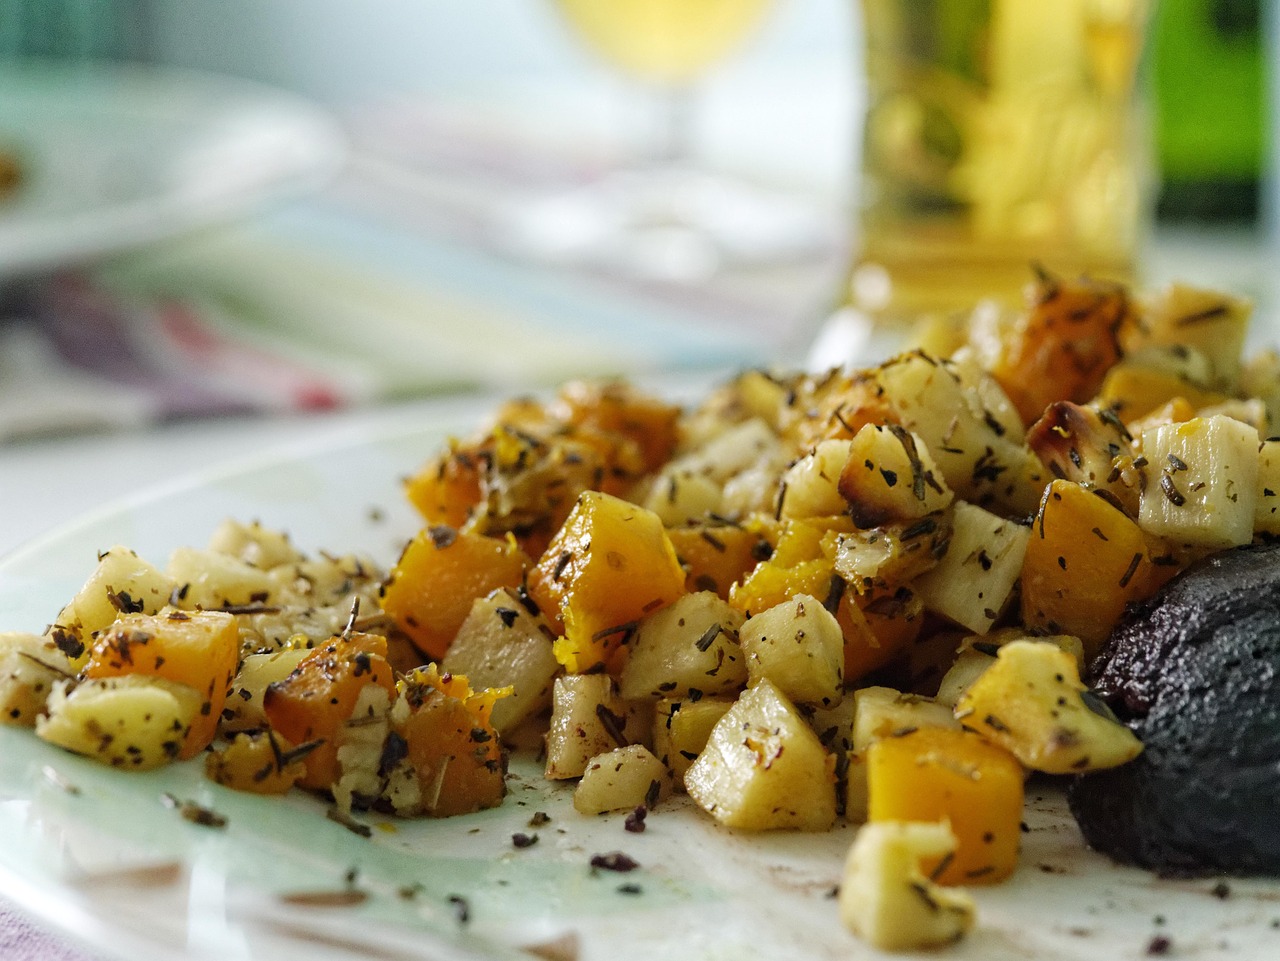  Рецепт запекания картофеля в рукаве с овощами по-турецки 